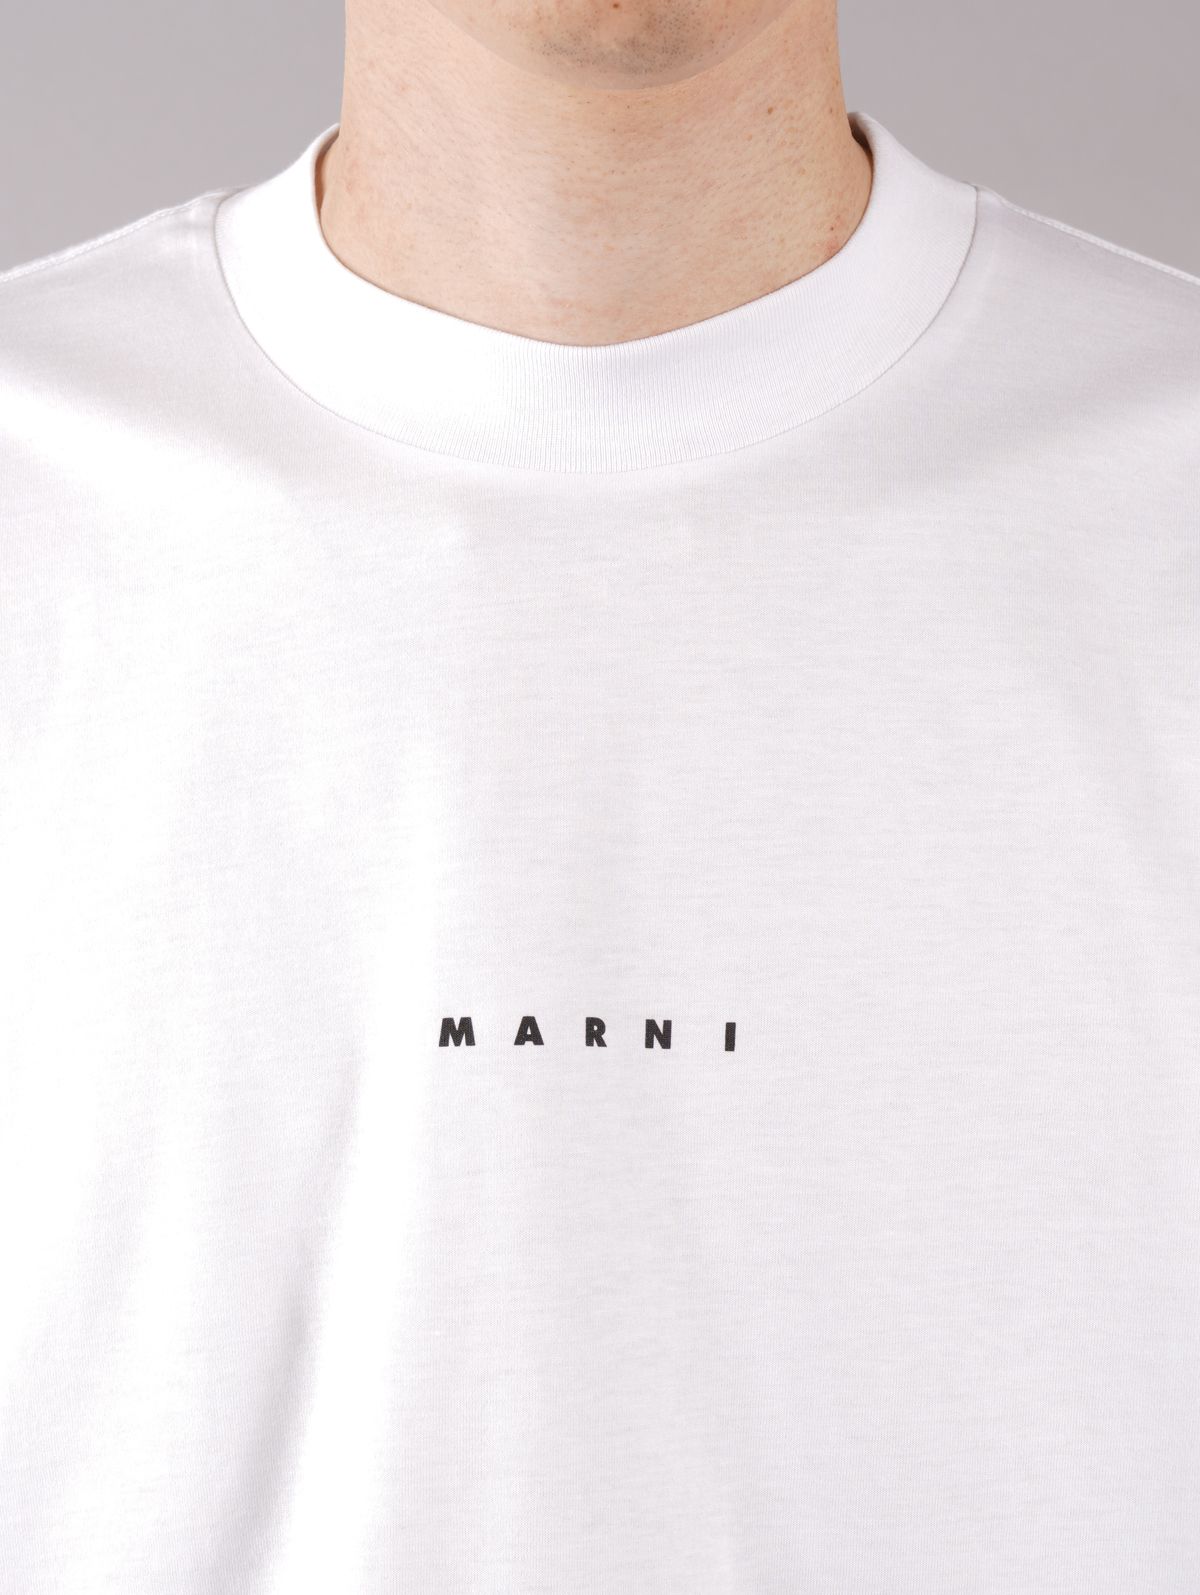 MARNI - 【ラスト1点】 LOGO T-SHIRT / ロゴ Tシャツ / オーバーサイズ 